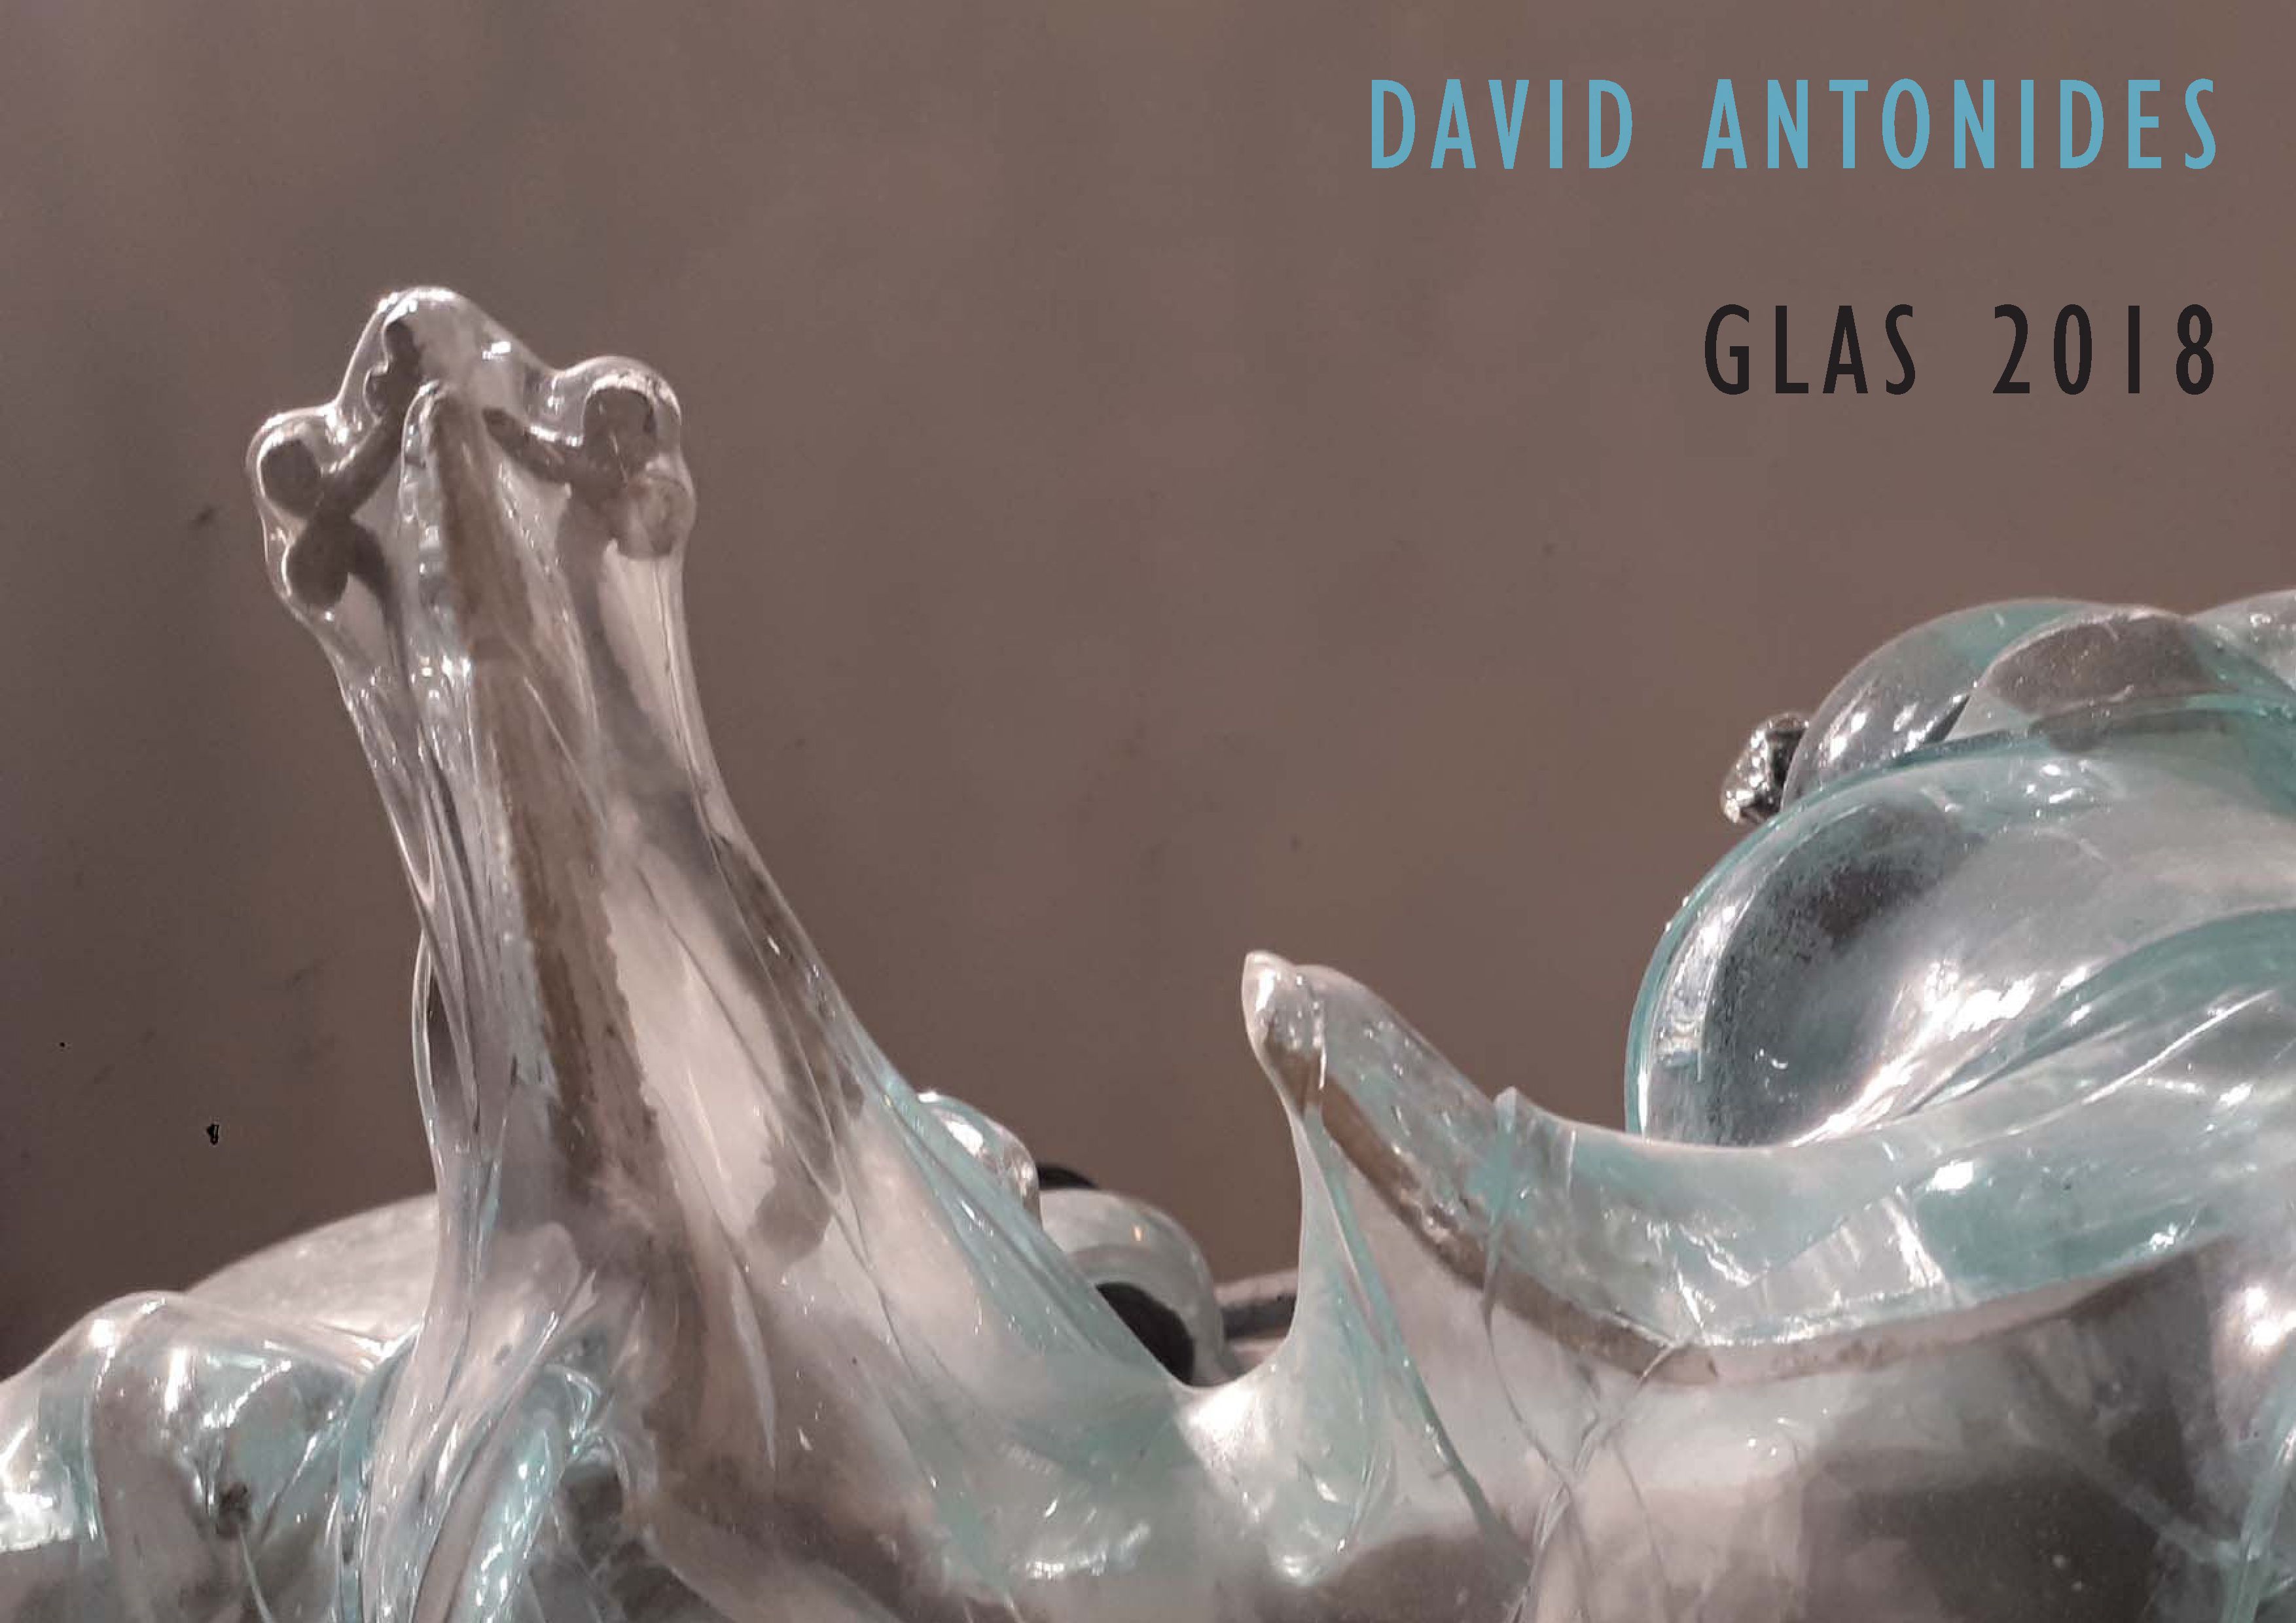 Portfolio Glas 2018 - David Antonides